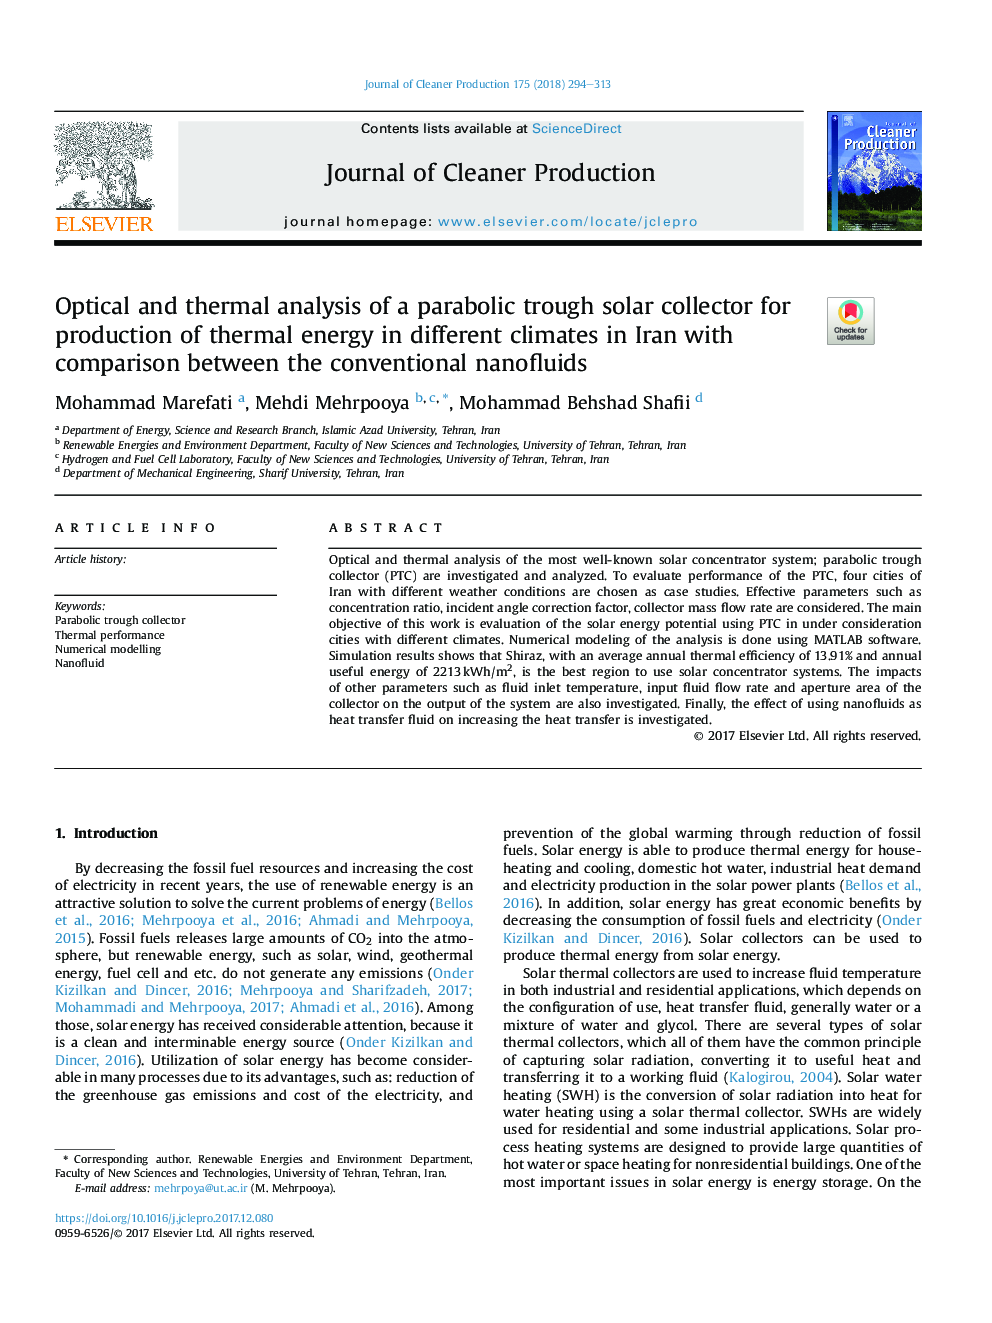 تجزیه و تحلیل نوری و حرارتی از یک جمع کننده خورشیدی پارابولیکی برای تولید انرژی حرارتی در اقلیم های مختلف در ایران با مقایسه نانوفیلد های معمولی 